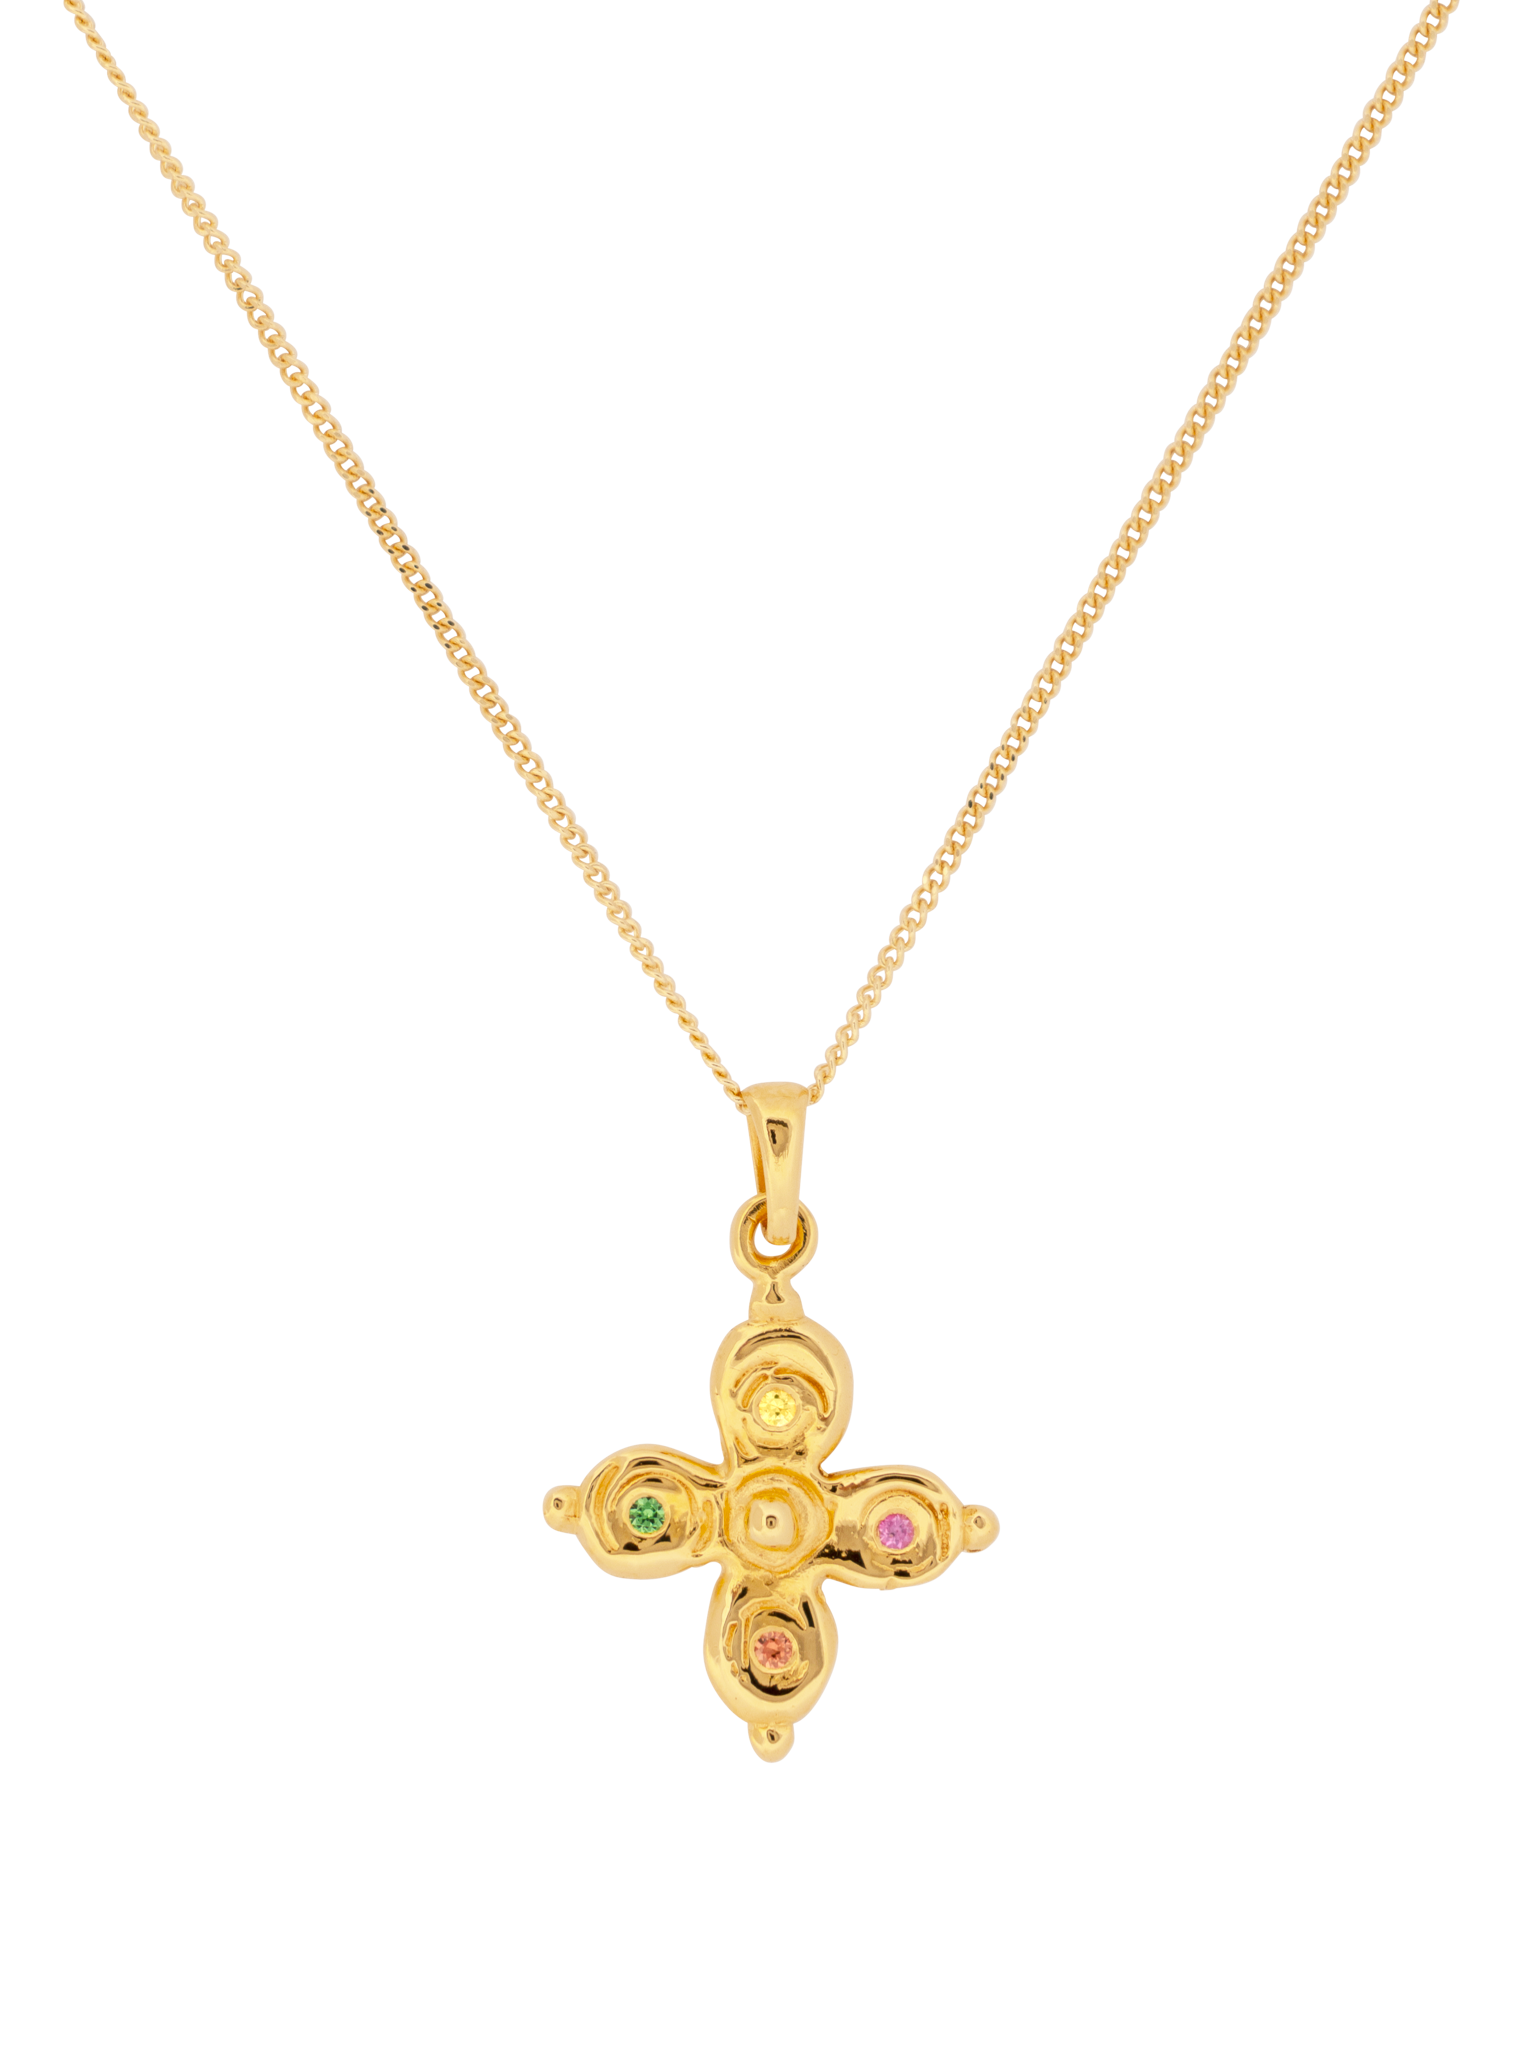 Byzantine cross necklace